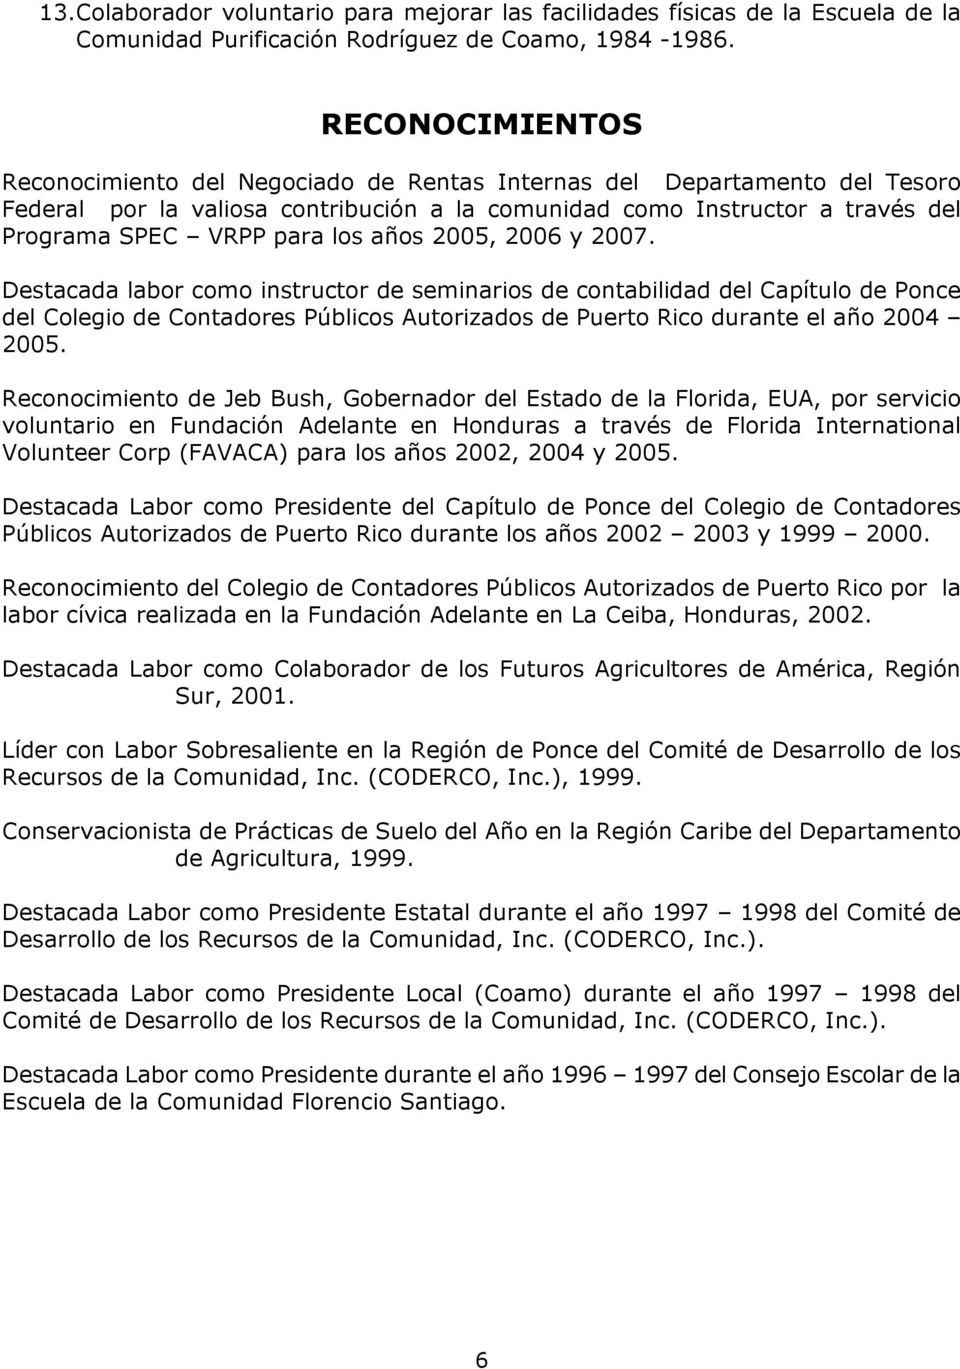 años 2005, 2006 y 2007. Destacada labor como instructor de seminarios de contabilidad del Capítulo de Ponce del Colegio de Contadores Públicos Autorizados de Puerto Rico durante el año 2004 2005.